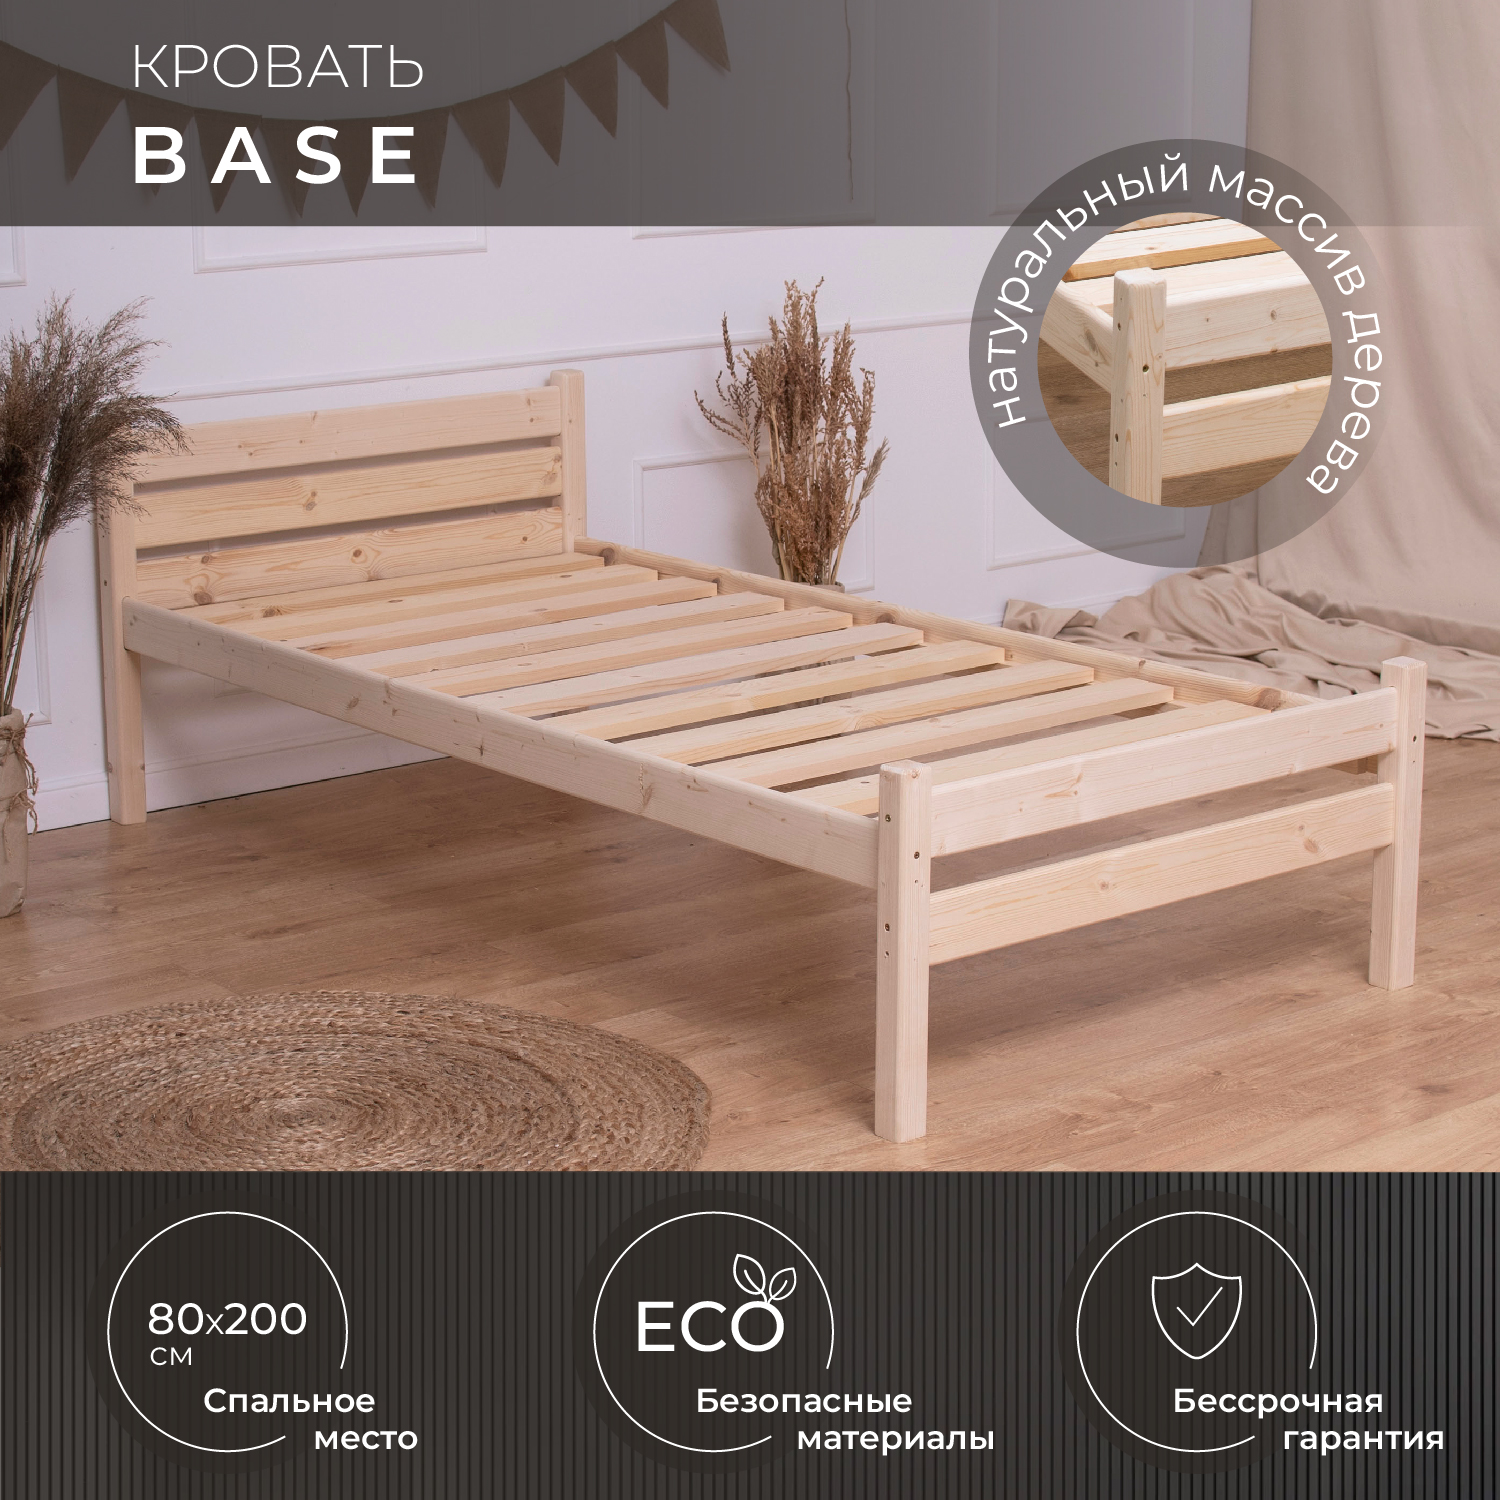 Деревянная односпальная кровать Новирон Base из массива сосны 80х200 см